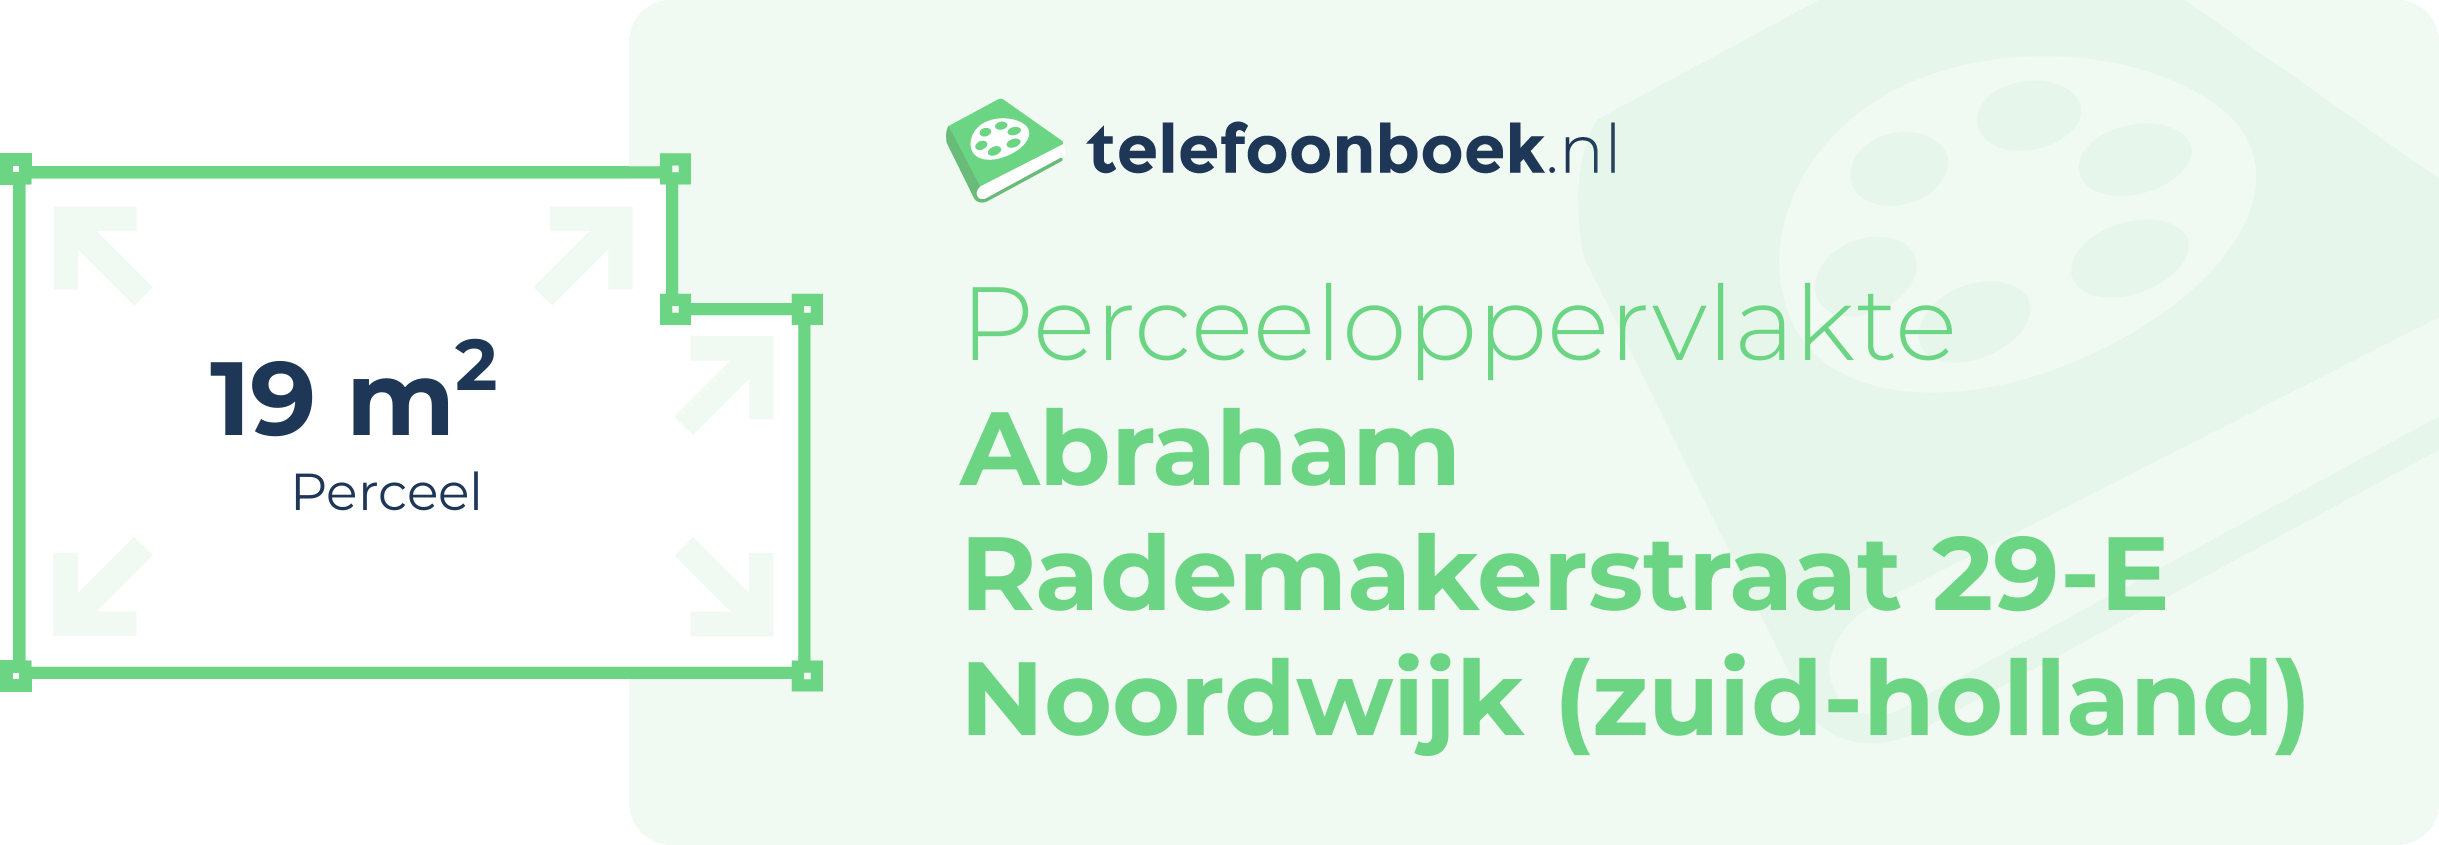 Perceeloppervlakte Abraham Rademakerstraat 29-E Noordwijk (Zuid-Holland)